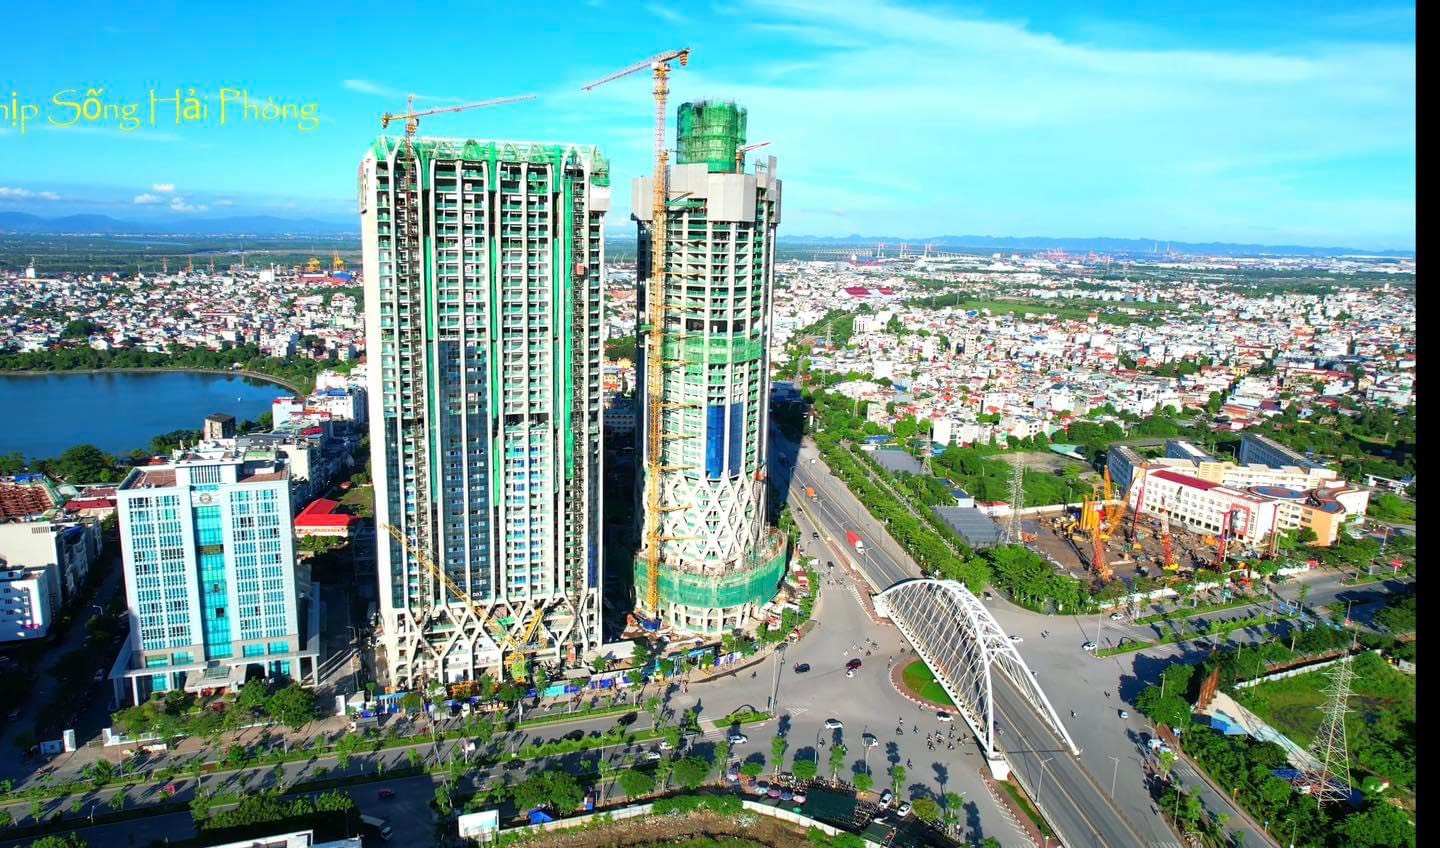 Với kiến trúc độc đáo và chiều cao kỷ lục, Dự án Diamond Crown Hai Phong hứa hẹn góp phần thay đổi diện mạo trung tâm thành phố Cảng Hải Phòng. Ảnh: HB.